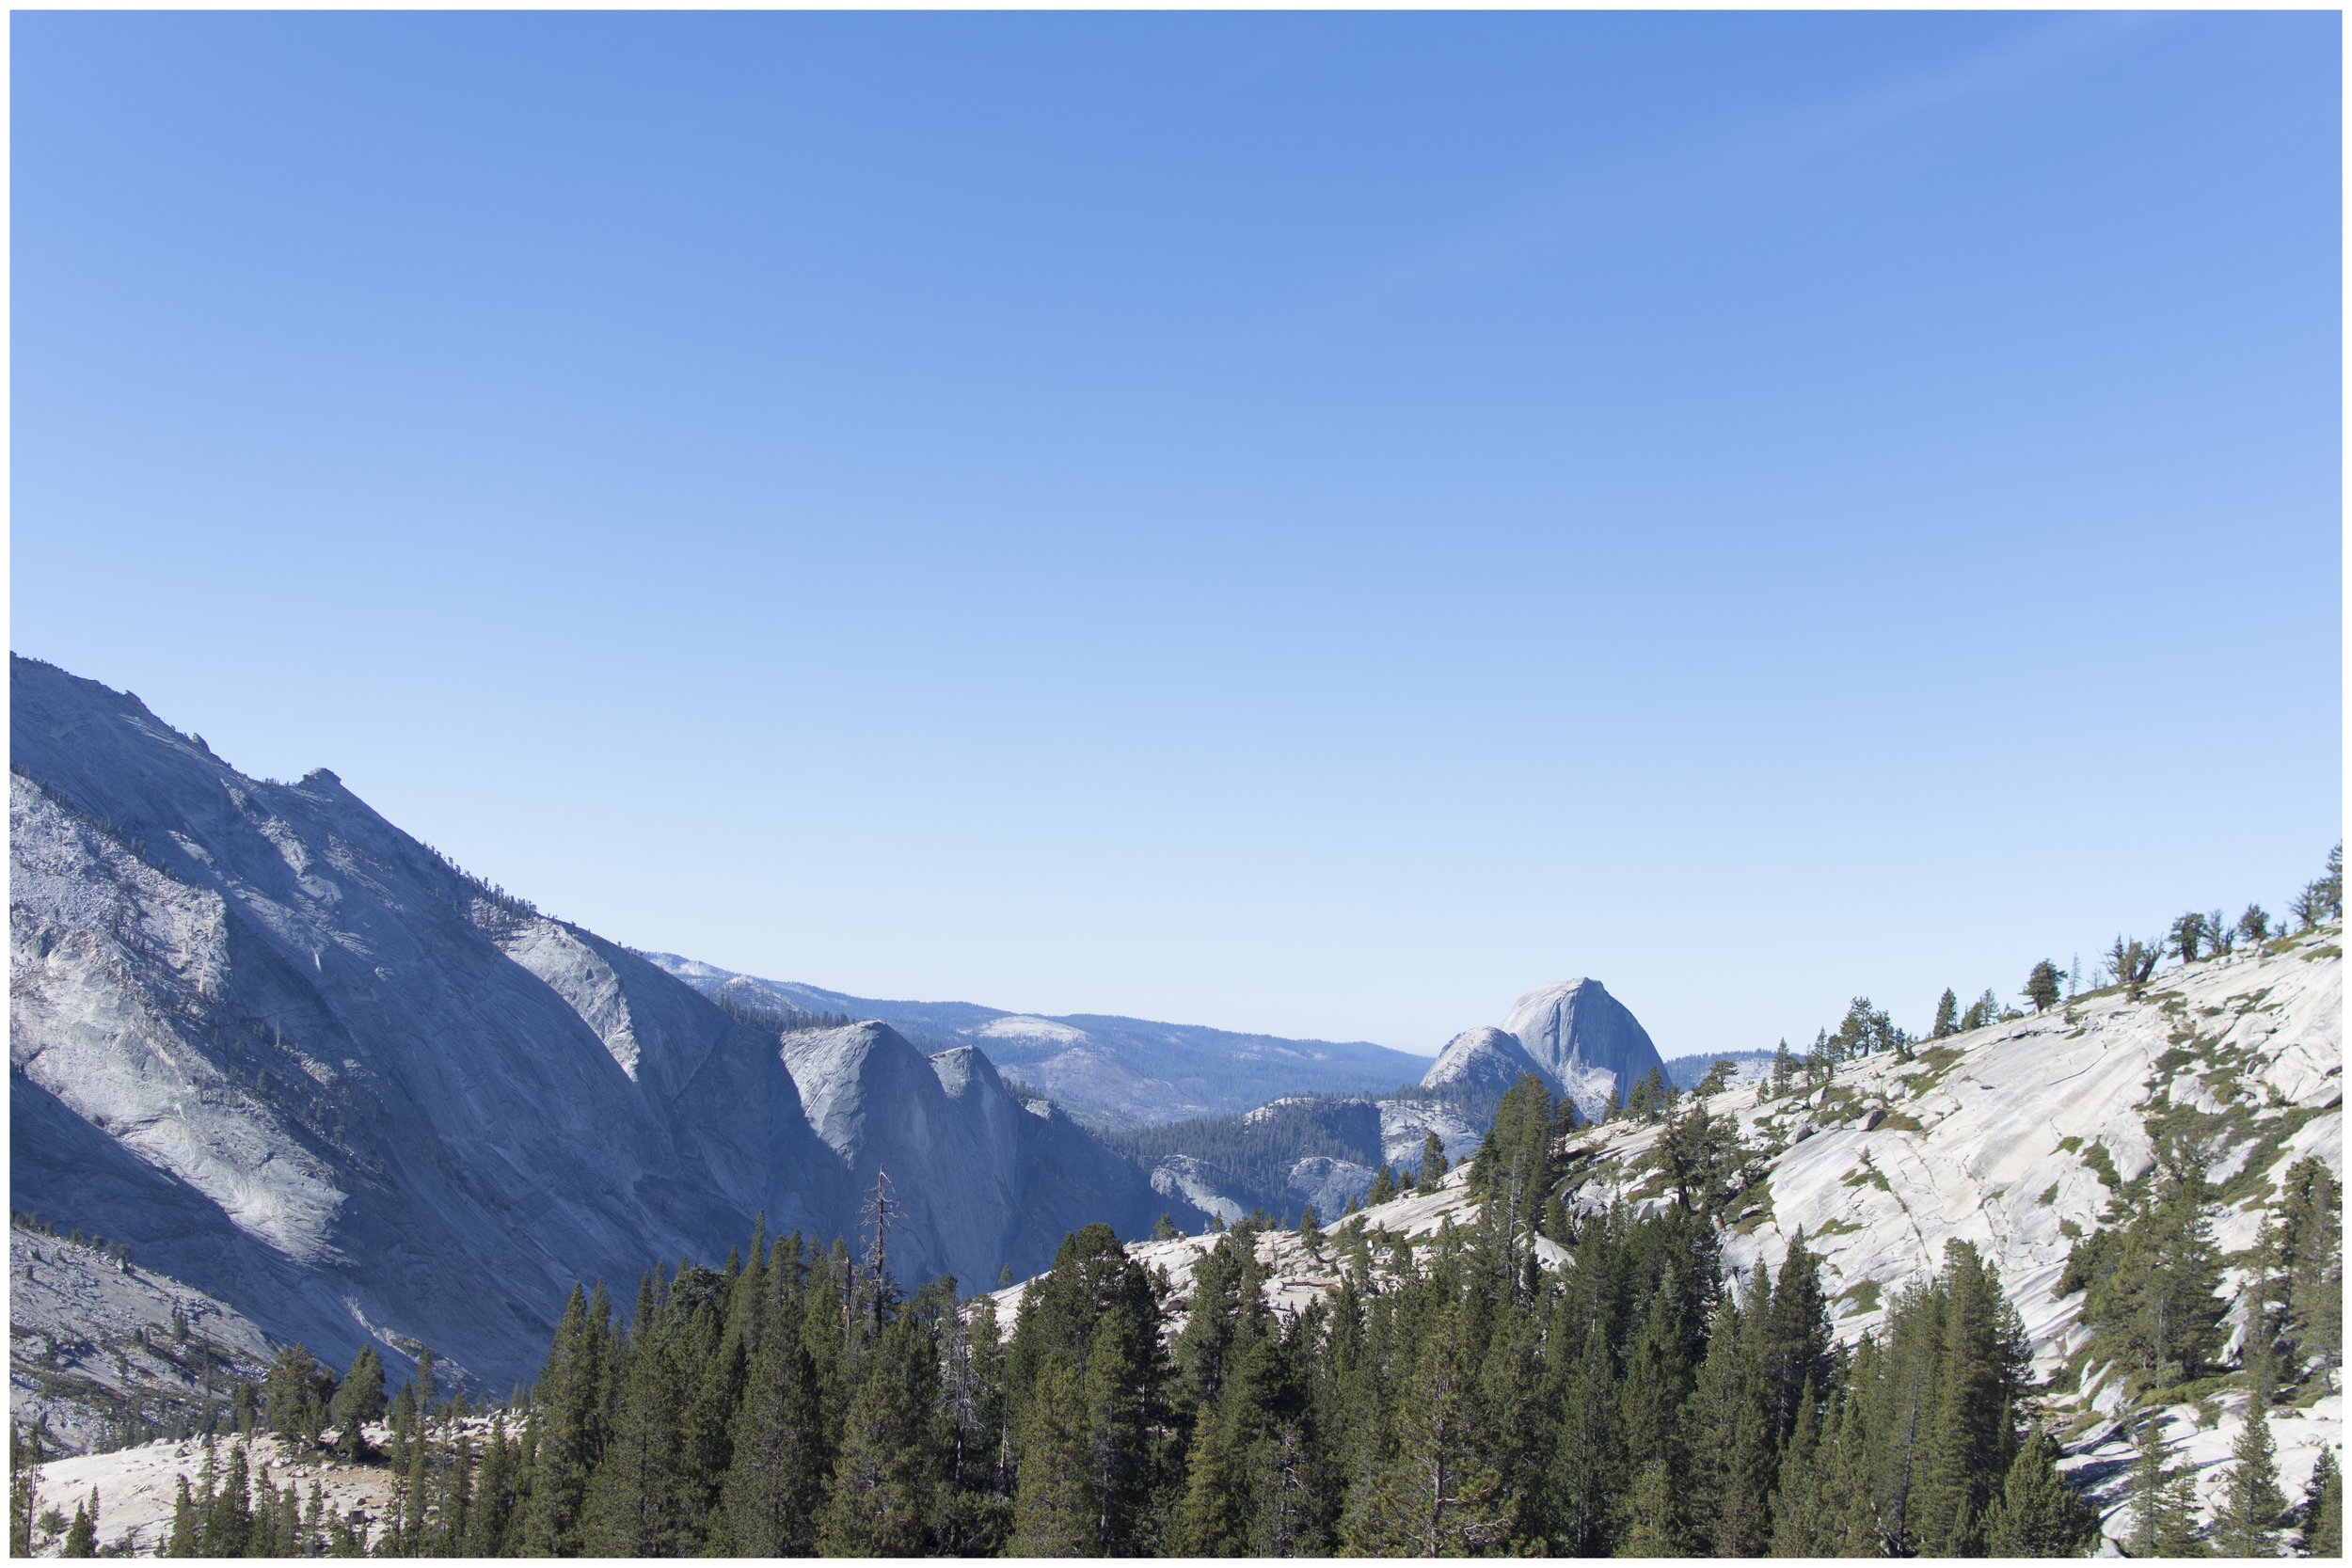  Yosemite NP, 2018 